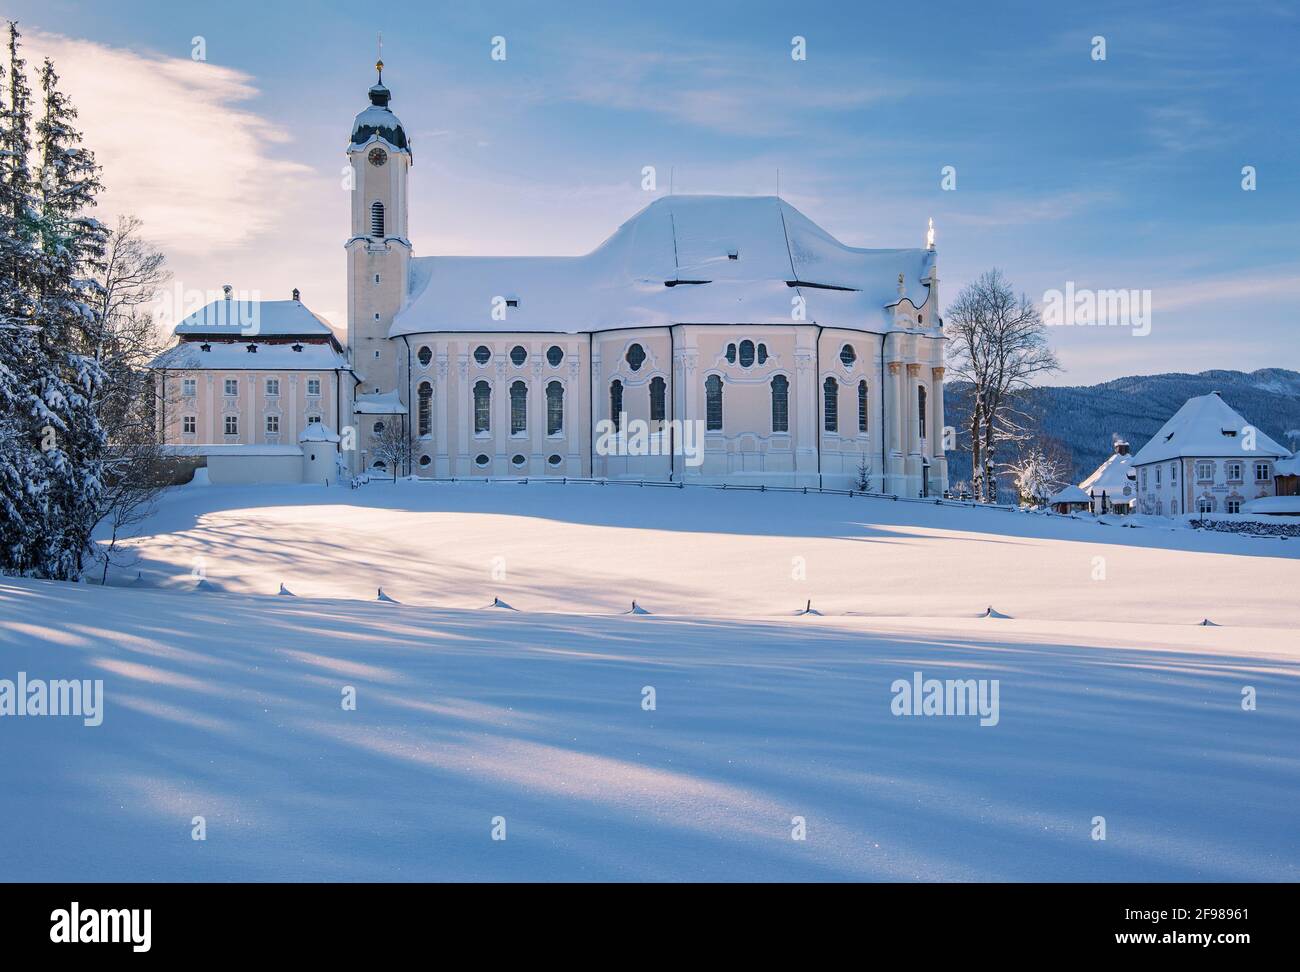 Winter landscape with the pilgrimage church Wieskirche in the district of Wies, Steingaden, Pfaffenwinkel, Romantische Strasse, Upper Bavaria, Bavaria, Germany Stock Photo